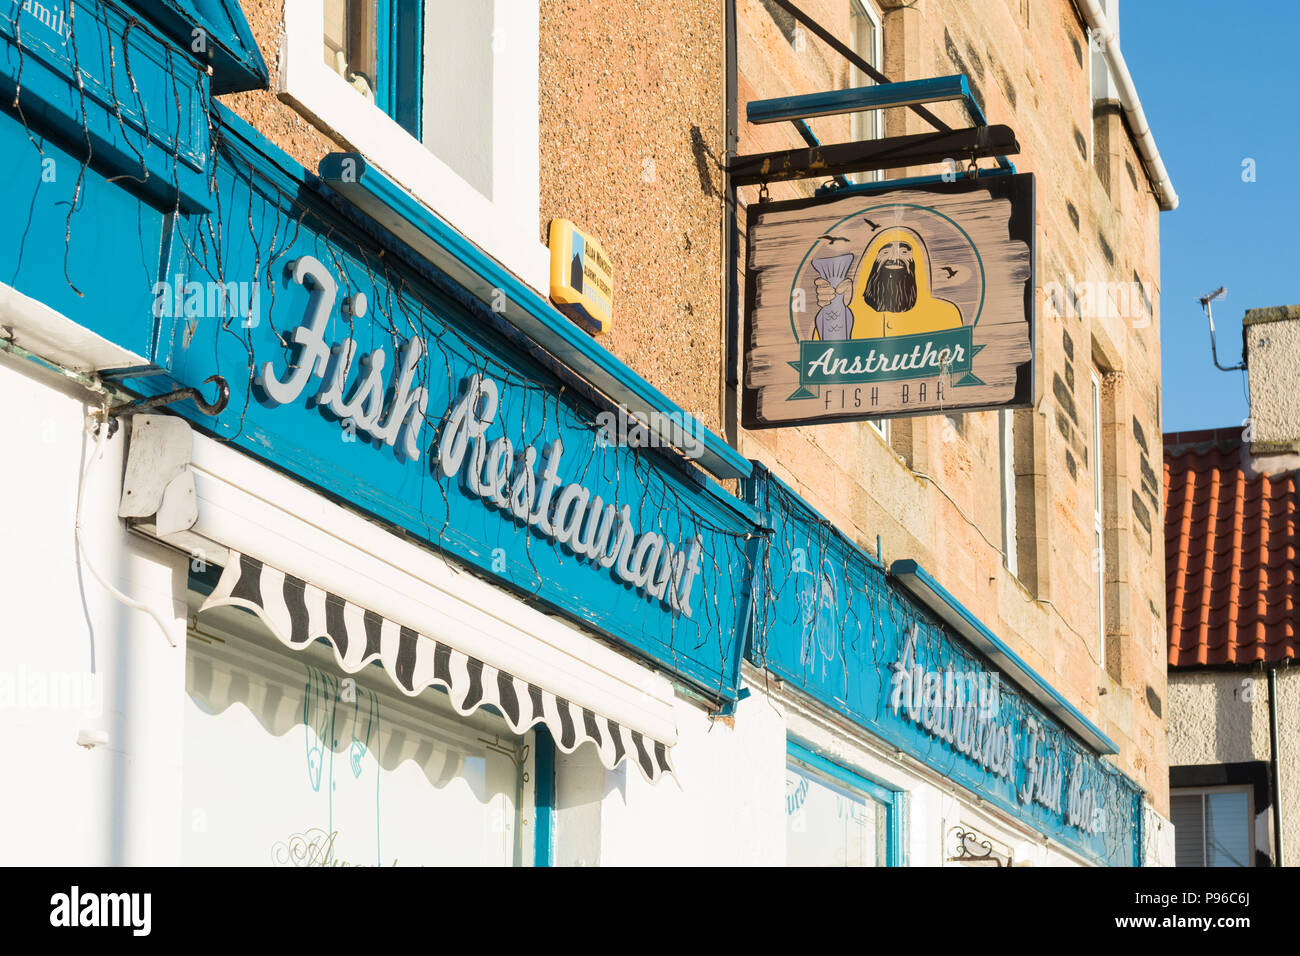 Anstruther fish bar y restaurante, Anstruther, Fife, Escocia, Reino Unido Foto de stock